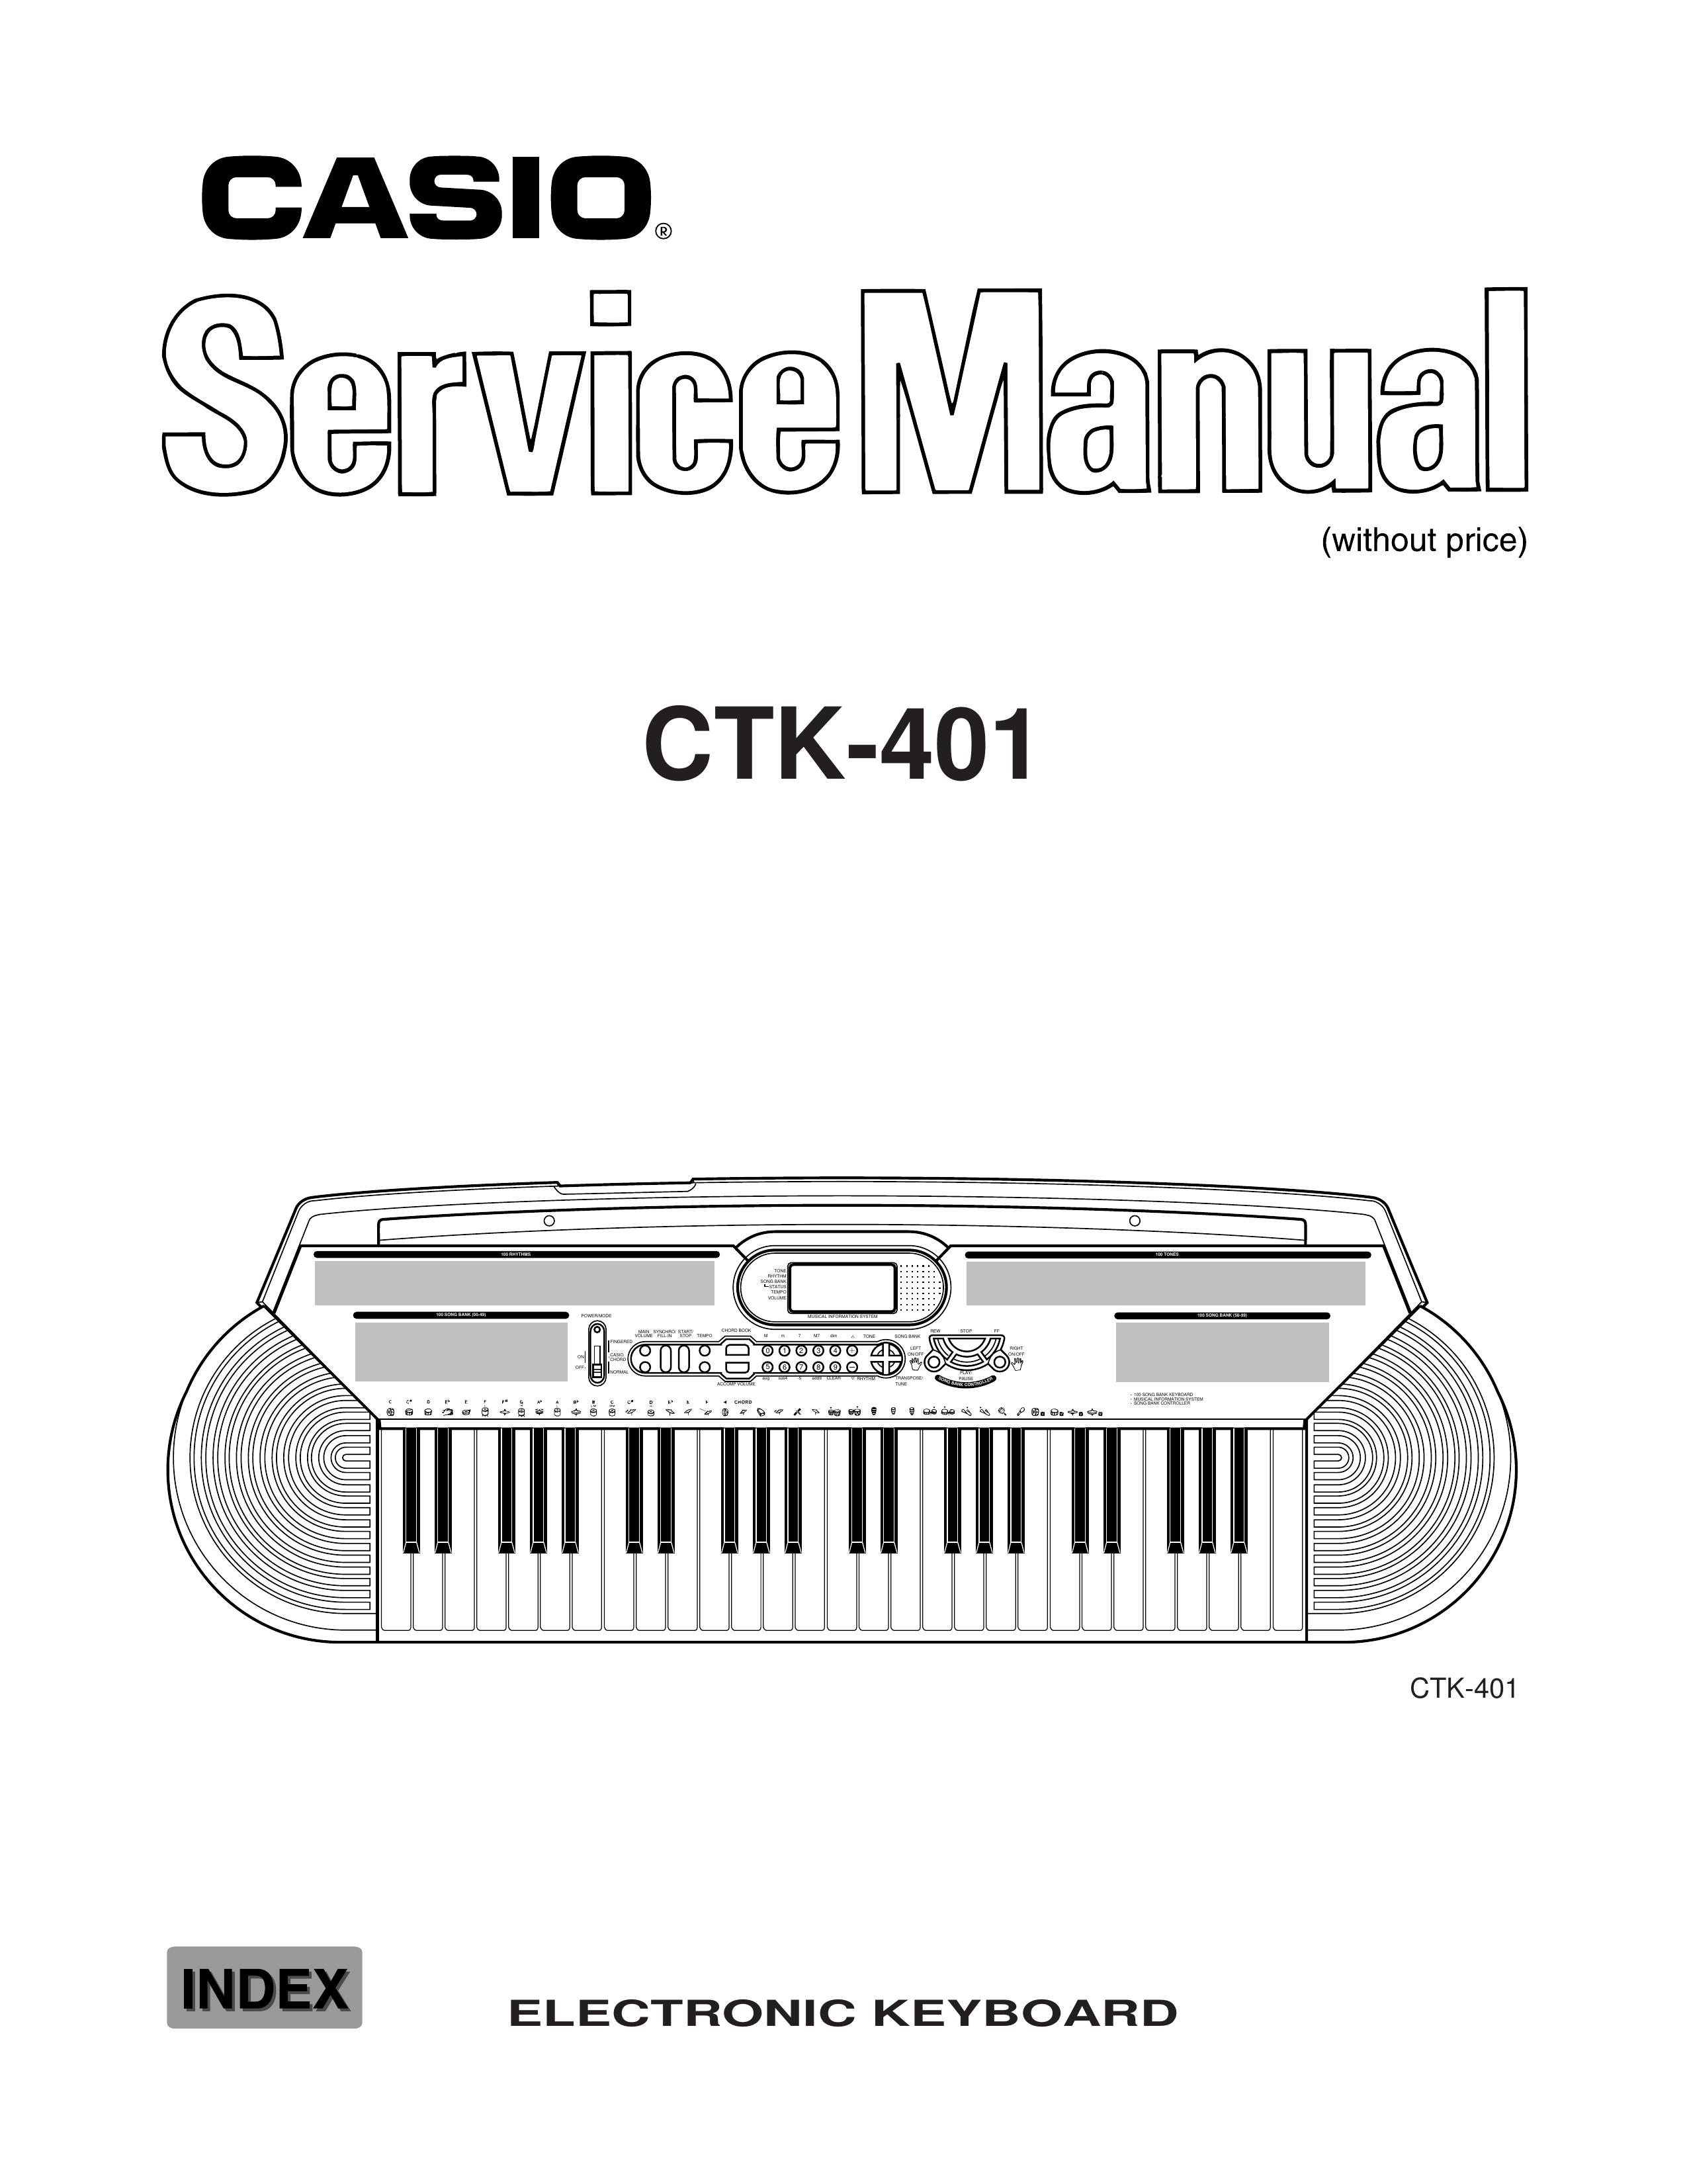 Casio CTK-401 Electronic Keyboard User Manual